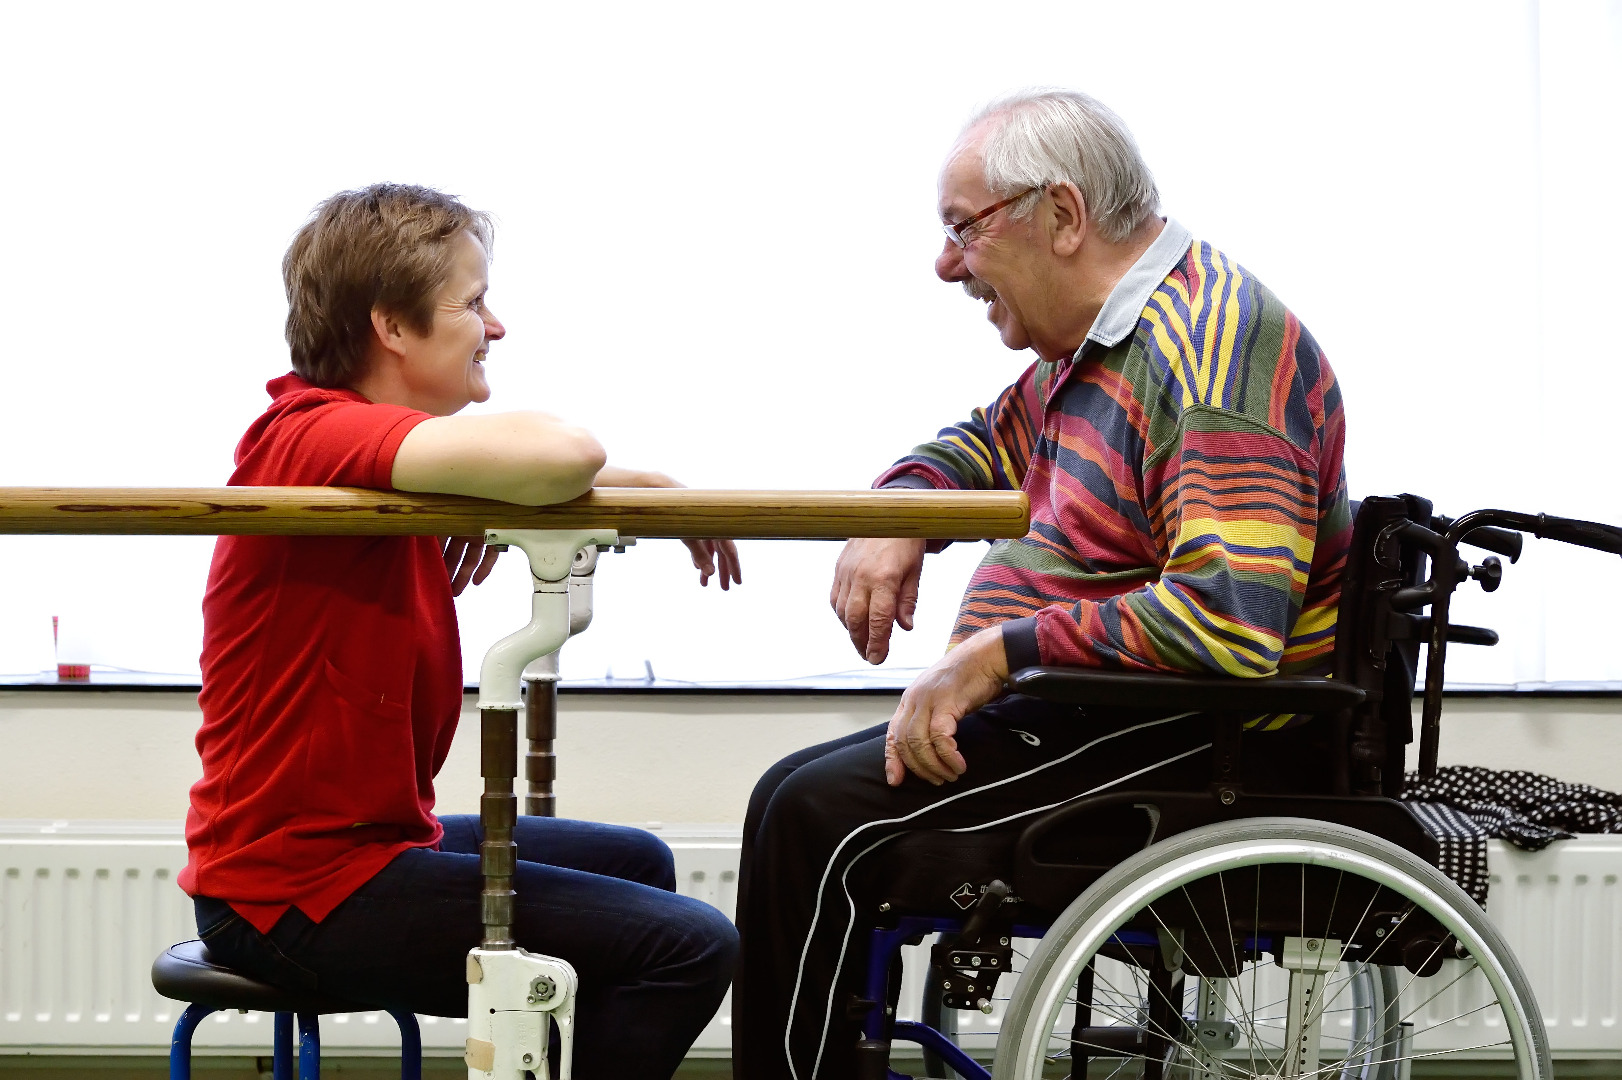 Fysiotherapeut zit op kruk in gesprek met patiënt in rolstoel